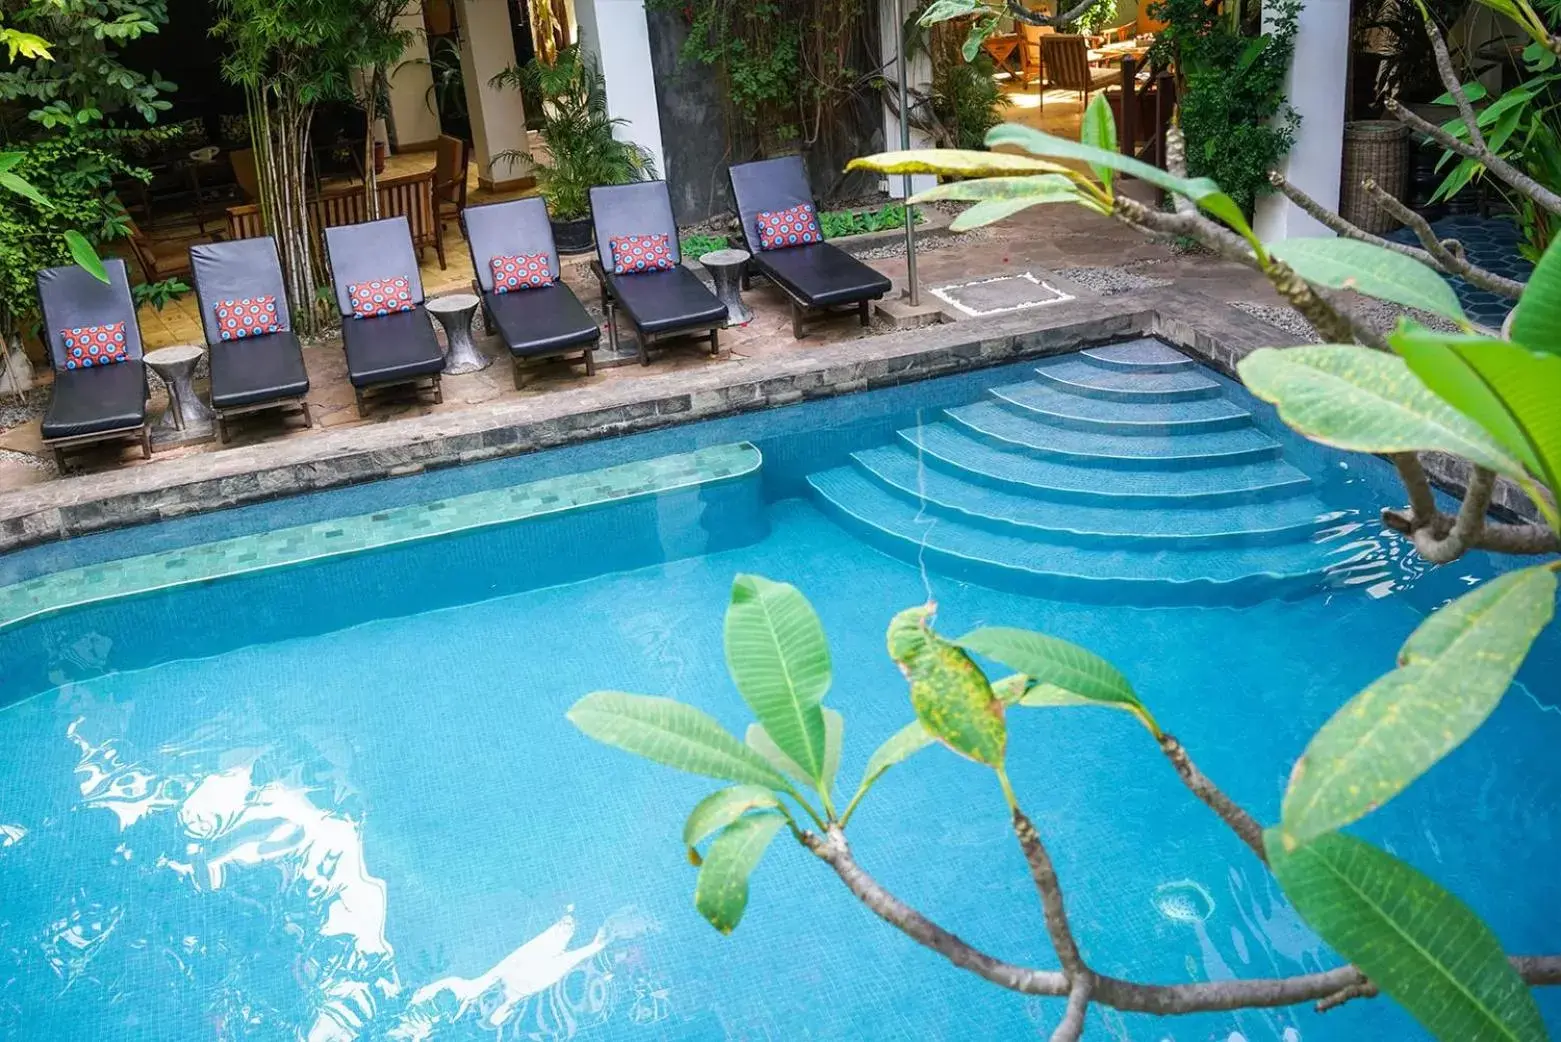 Swimming Pool in Rambutan Resort – Siem Reap